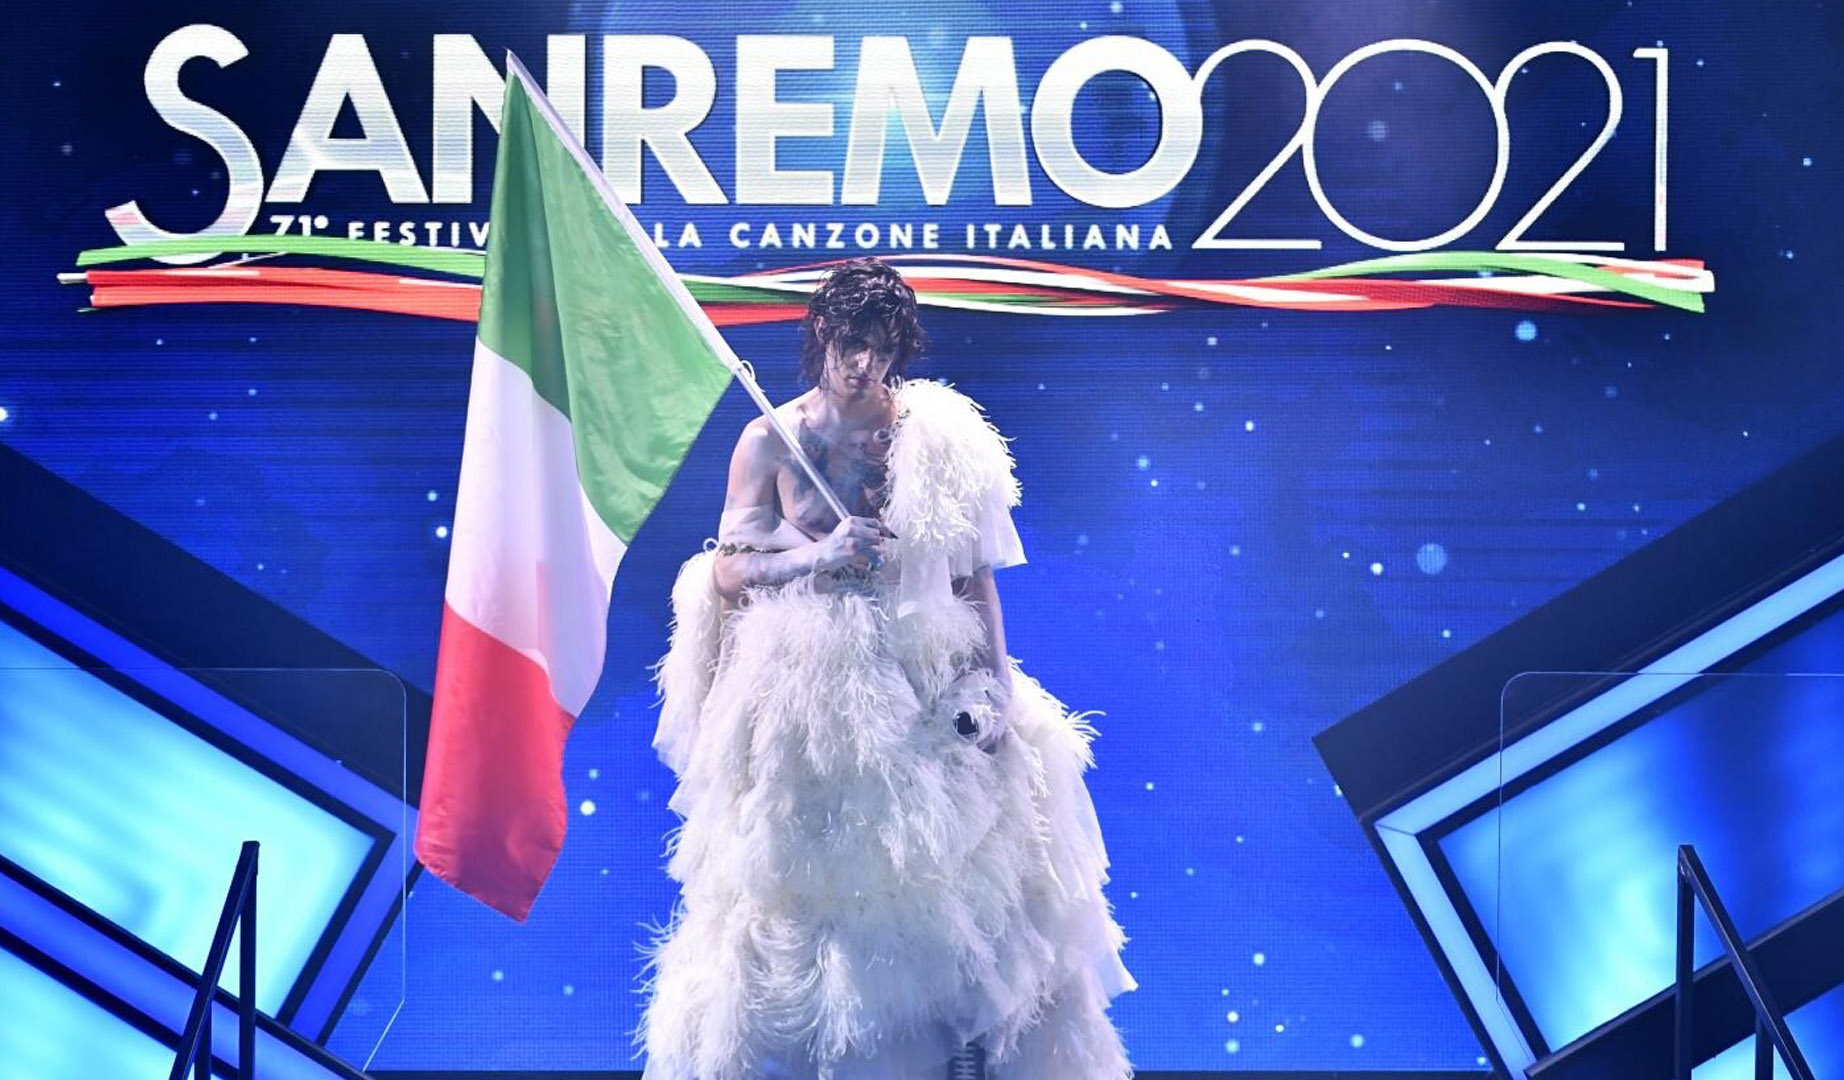 8M de italianos vieron la cuarta serata de SanRemo 2021 que contó con 499.400 comentarios en redes